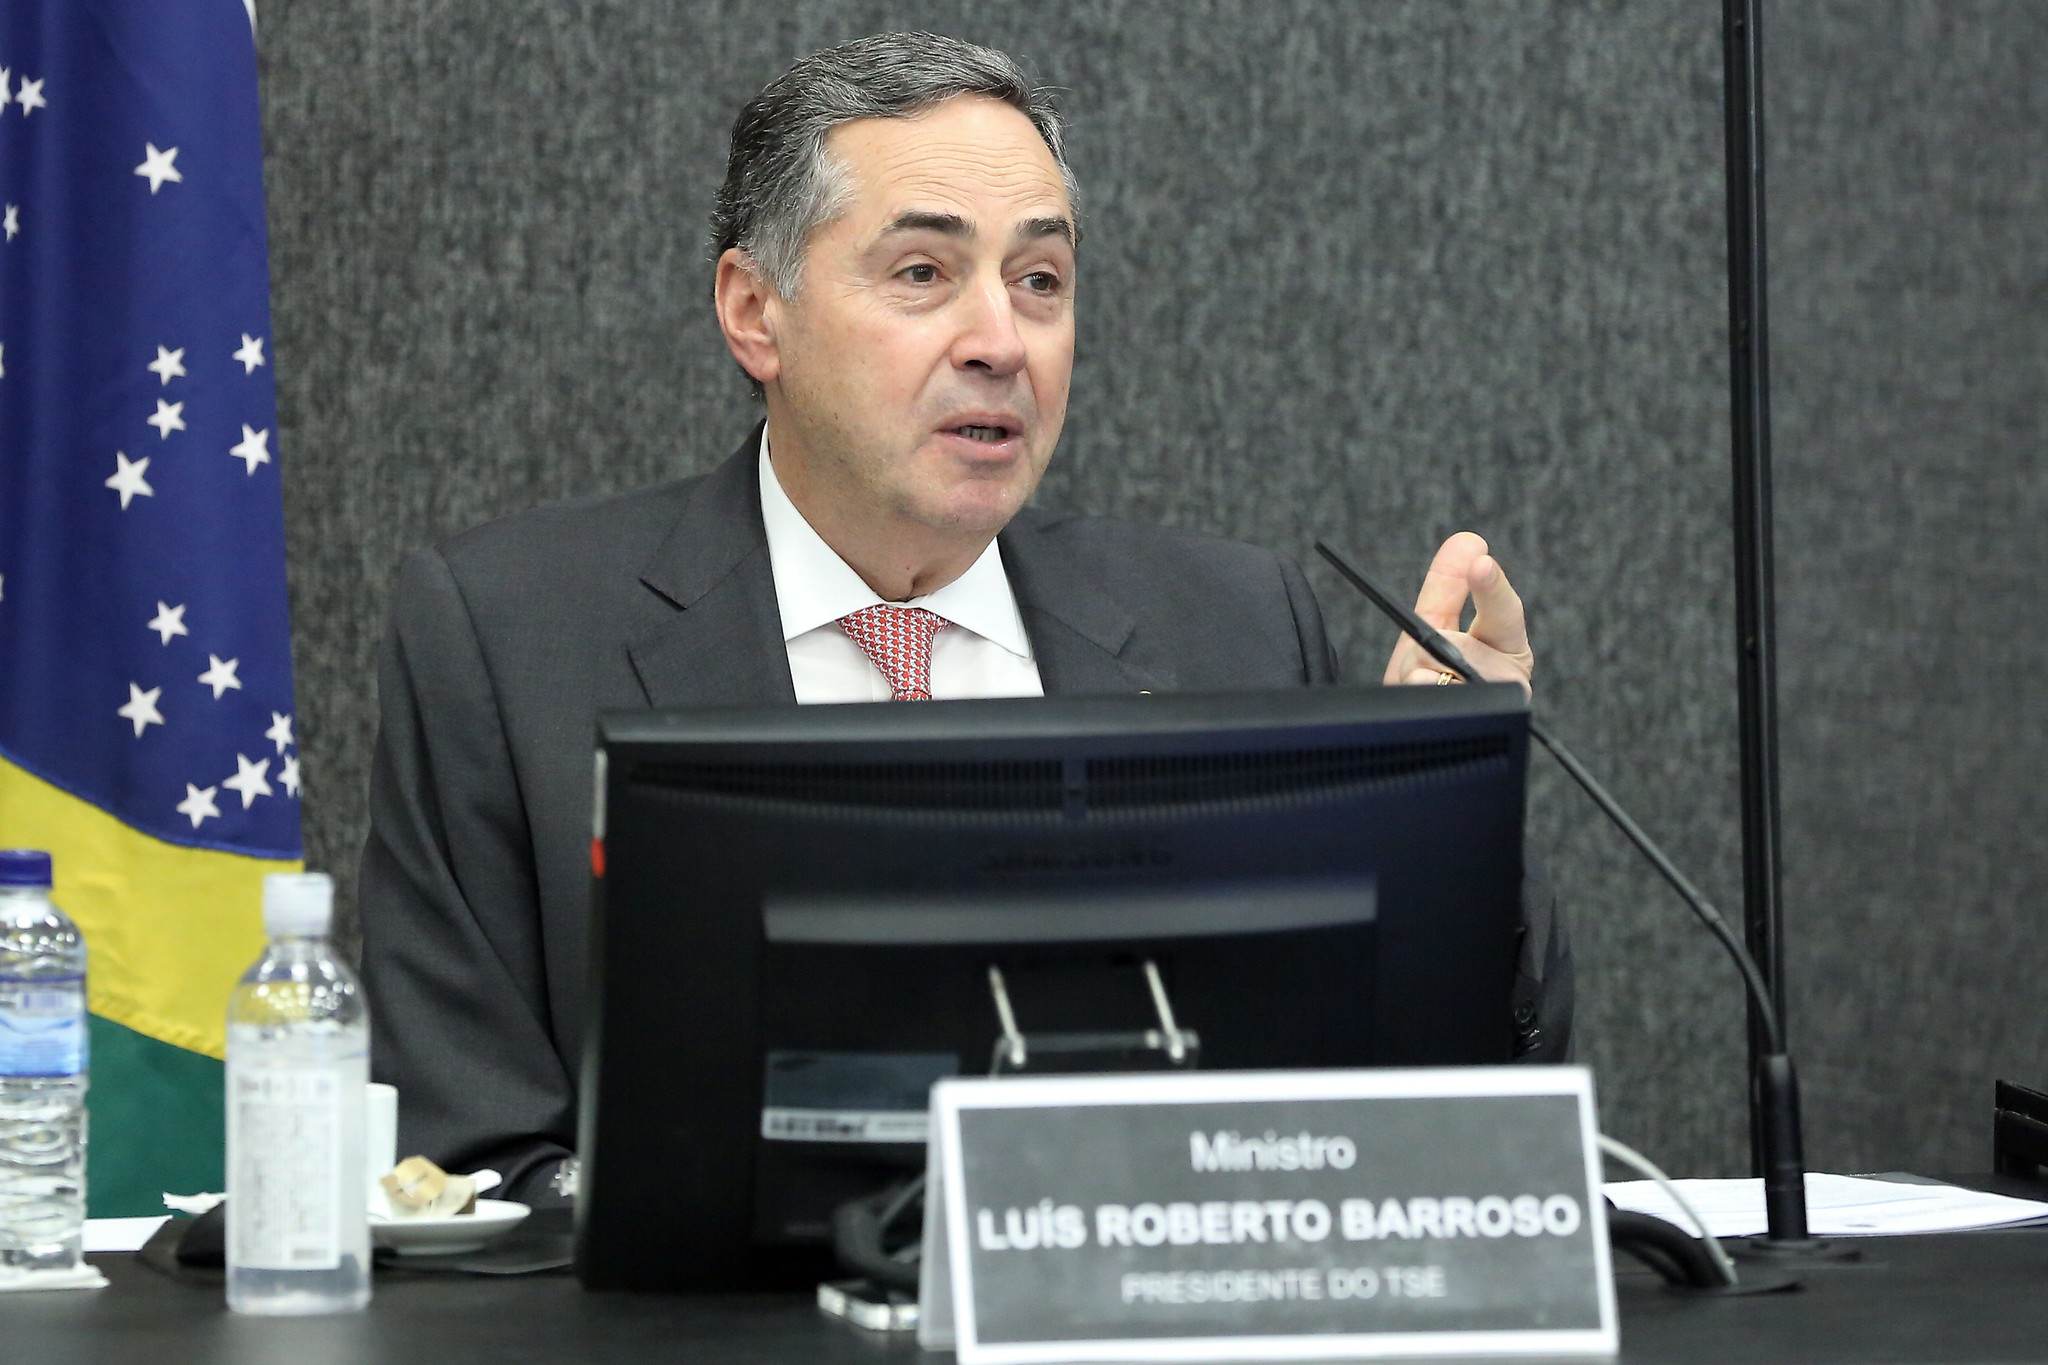 Ministro Luis Roberto Barroso, presidente do Tribunal Superior Eleitoral